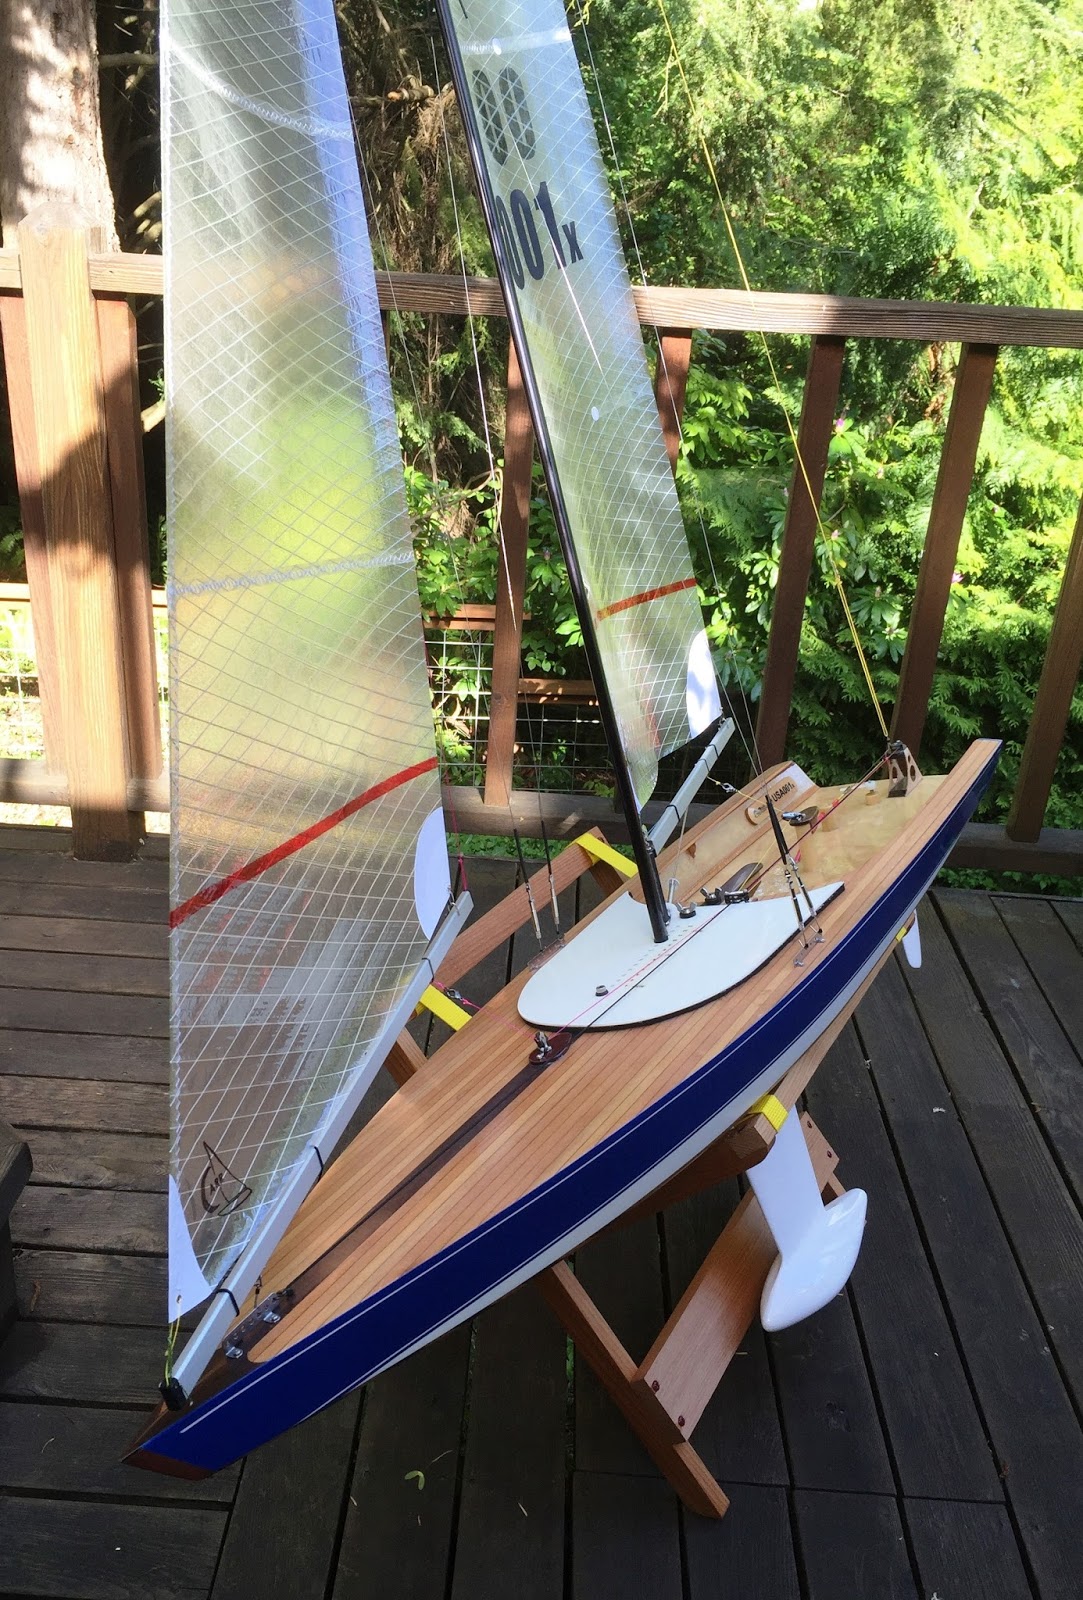 model sailboat built